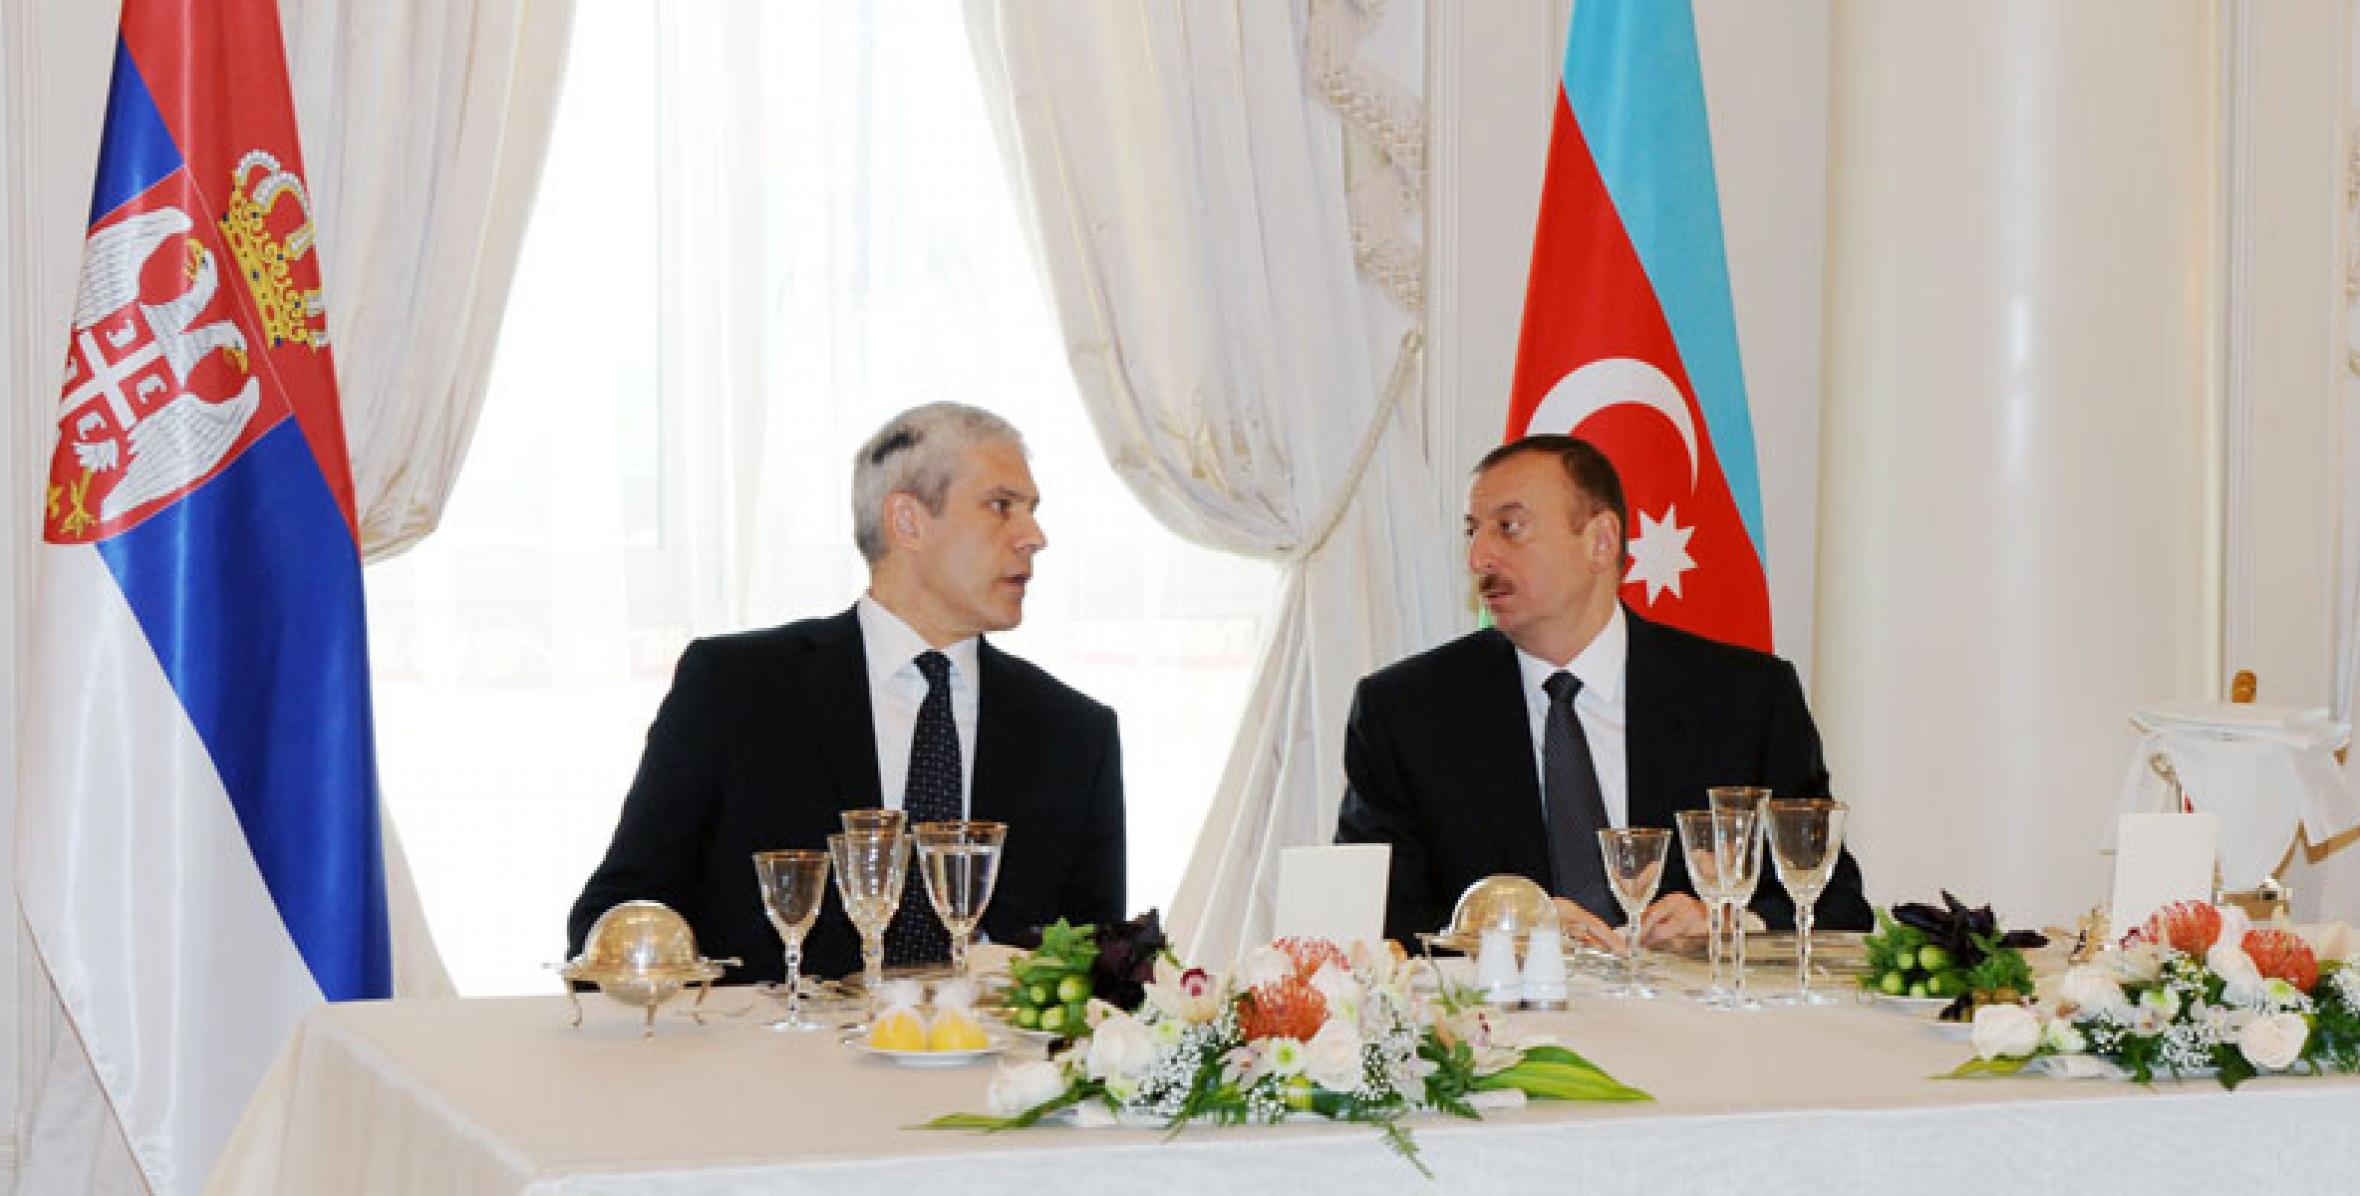 От имени Президента Ильхама Алиева был дан официальный обед в честь Президента Сербии Бориса Тадича